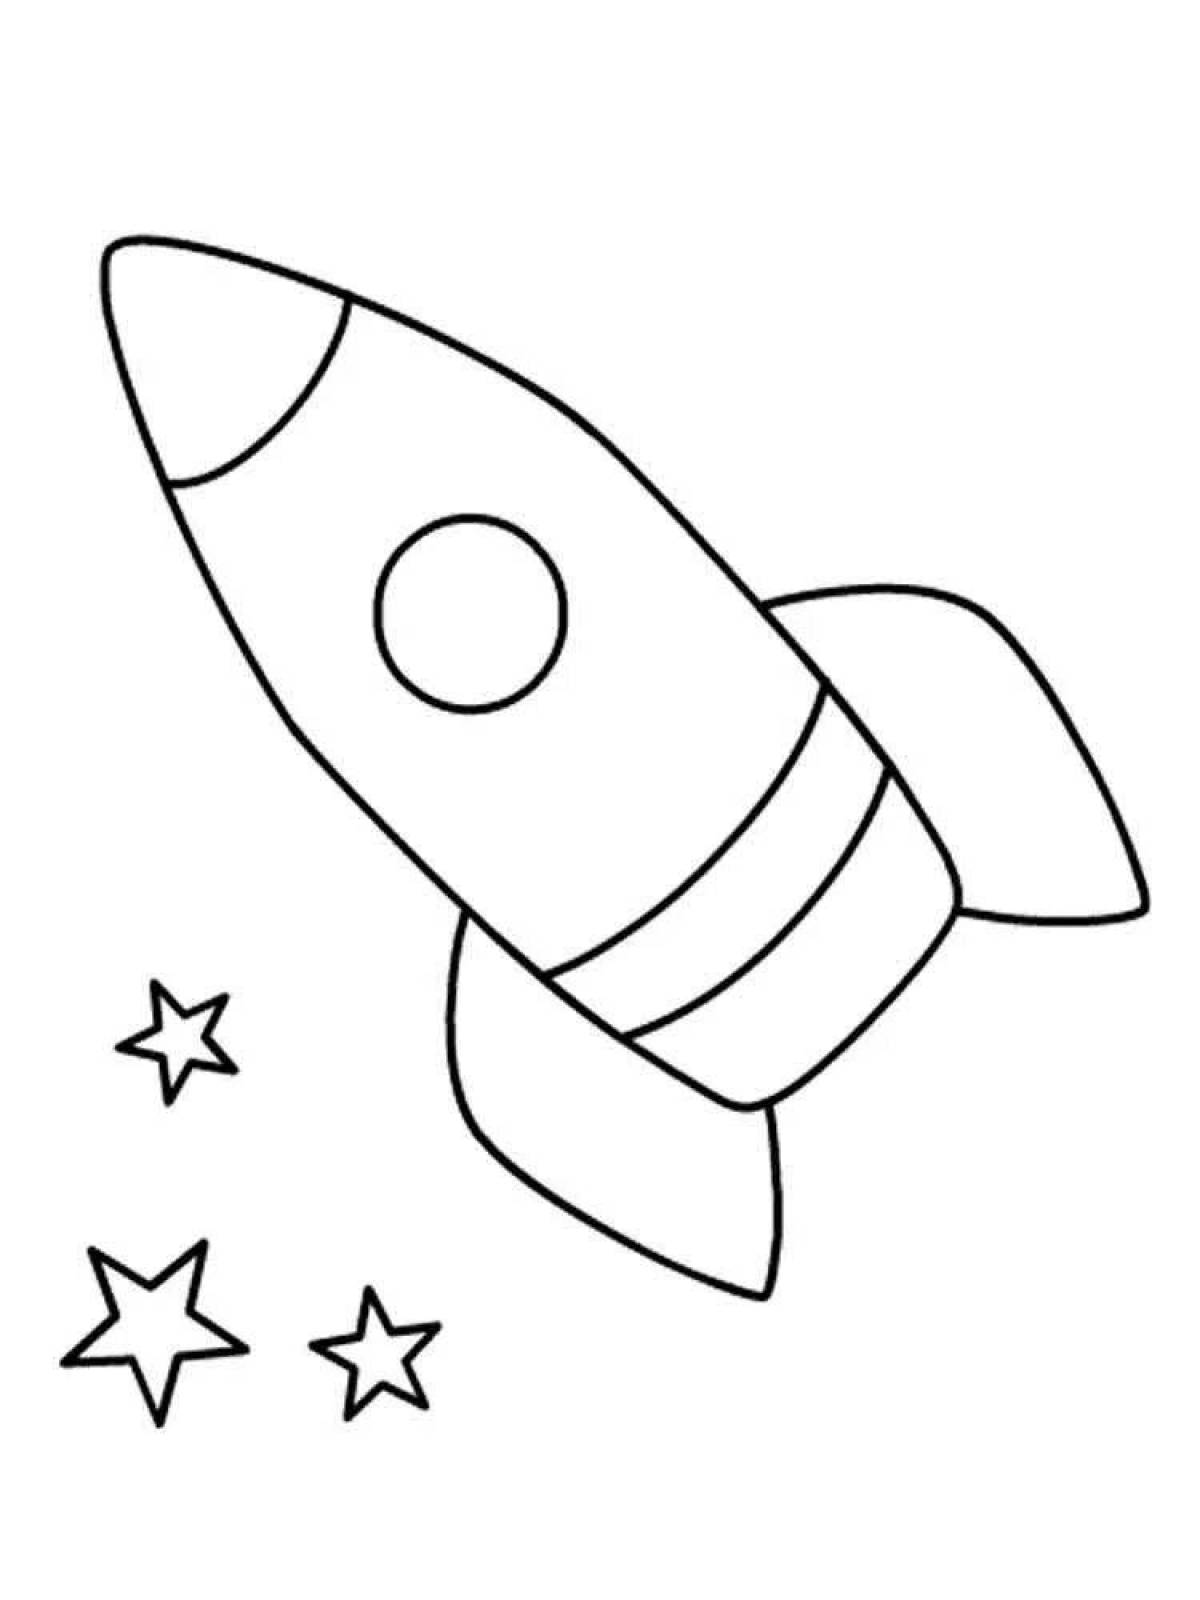 Зымыран раскраска. Ракета раскраска. Ракета раскраска для детей. Космос раскраска для детей. Раскраска ракета в космосе.